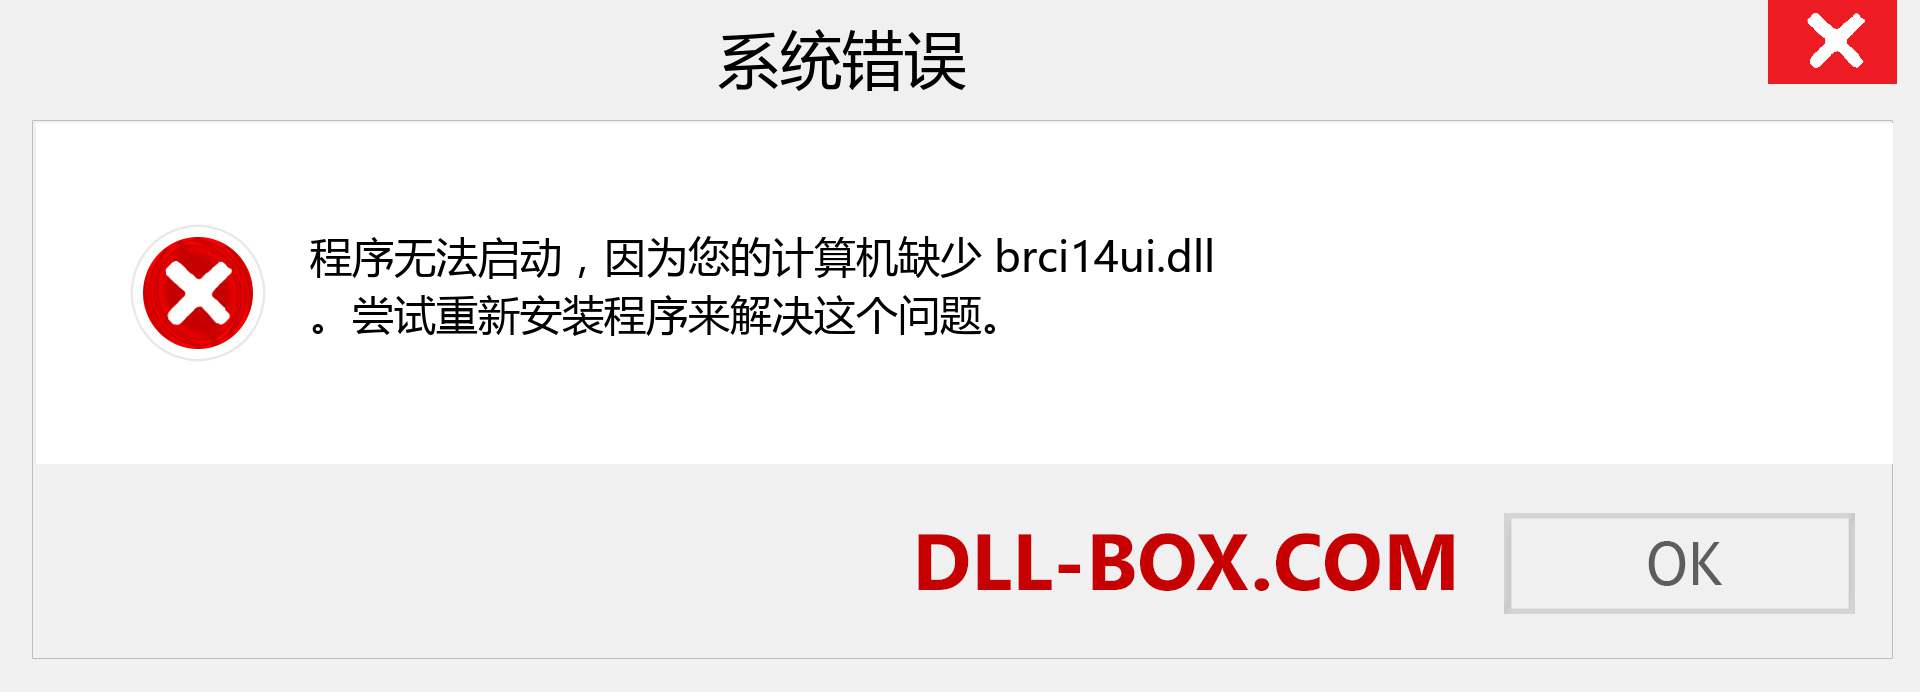 brci14ui.dll 文件丢失？。 适用于 Windows 7、8、10 的下载 - 修复 Windows、照片、图像上的 brci14ui dll 丢失错误